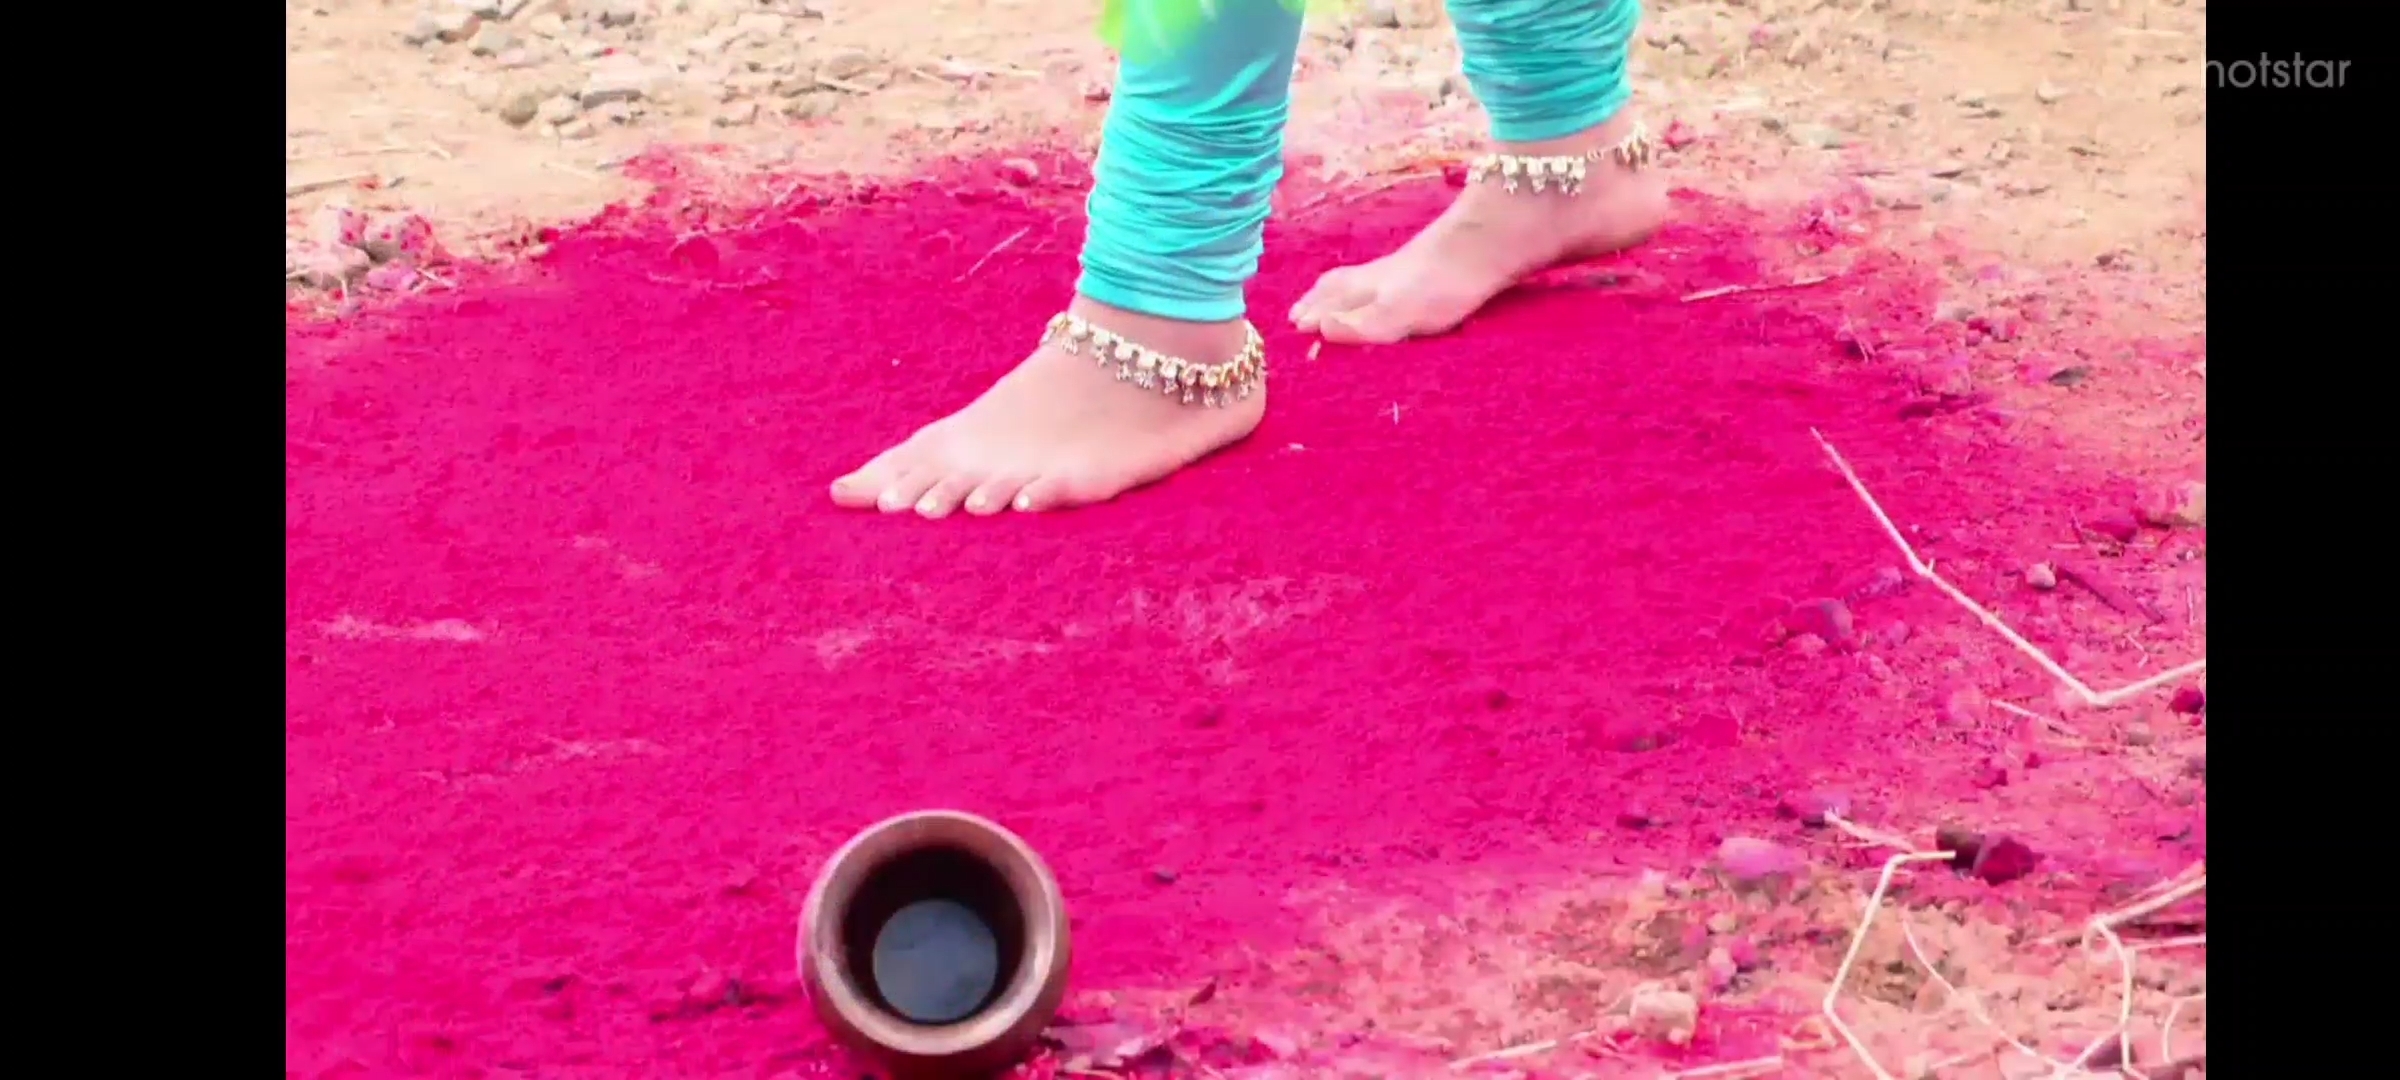 2400px x 1080px - Shivani Surve's Feet << wikiFeet